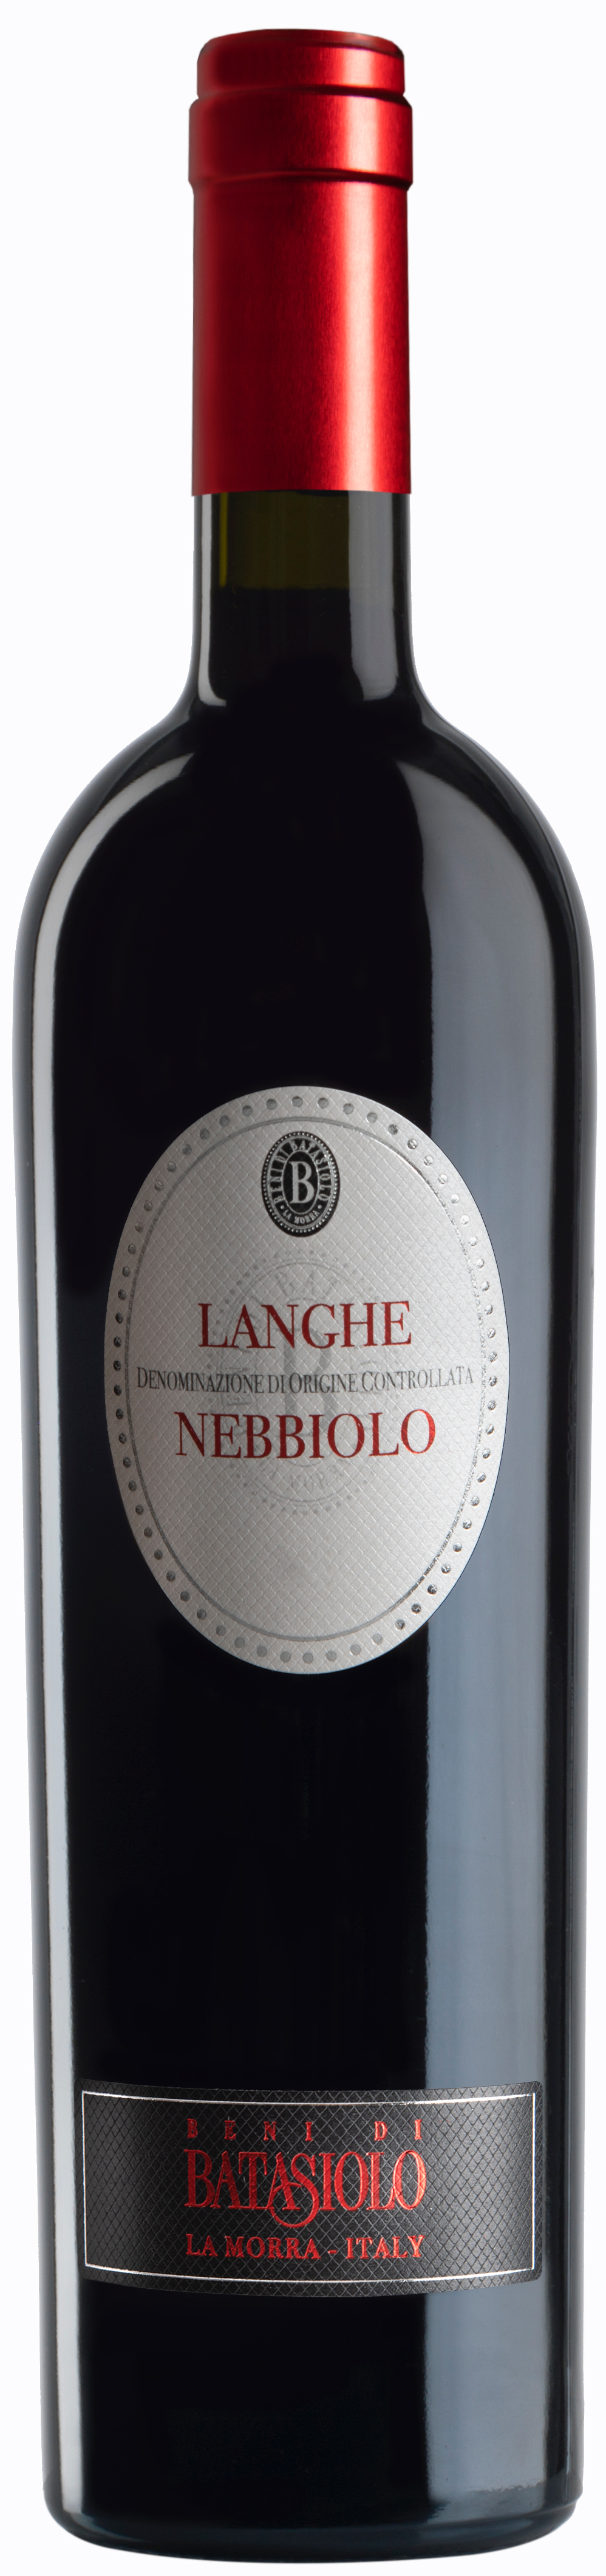 Nebbilo Langhe - Batasiolo - Italien Rotwein trocken 0,75l - 14% vol.